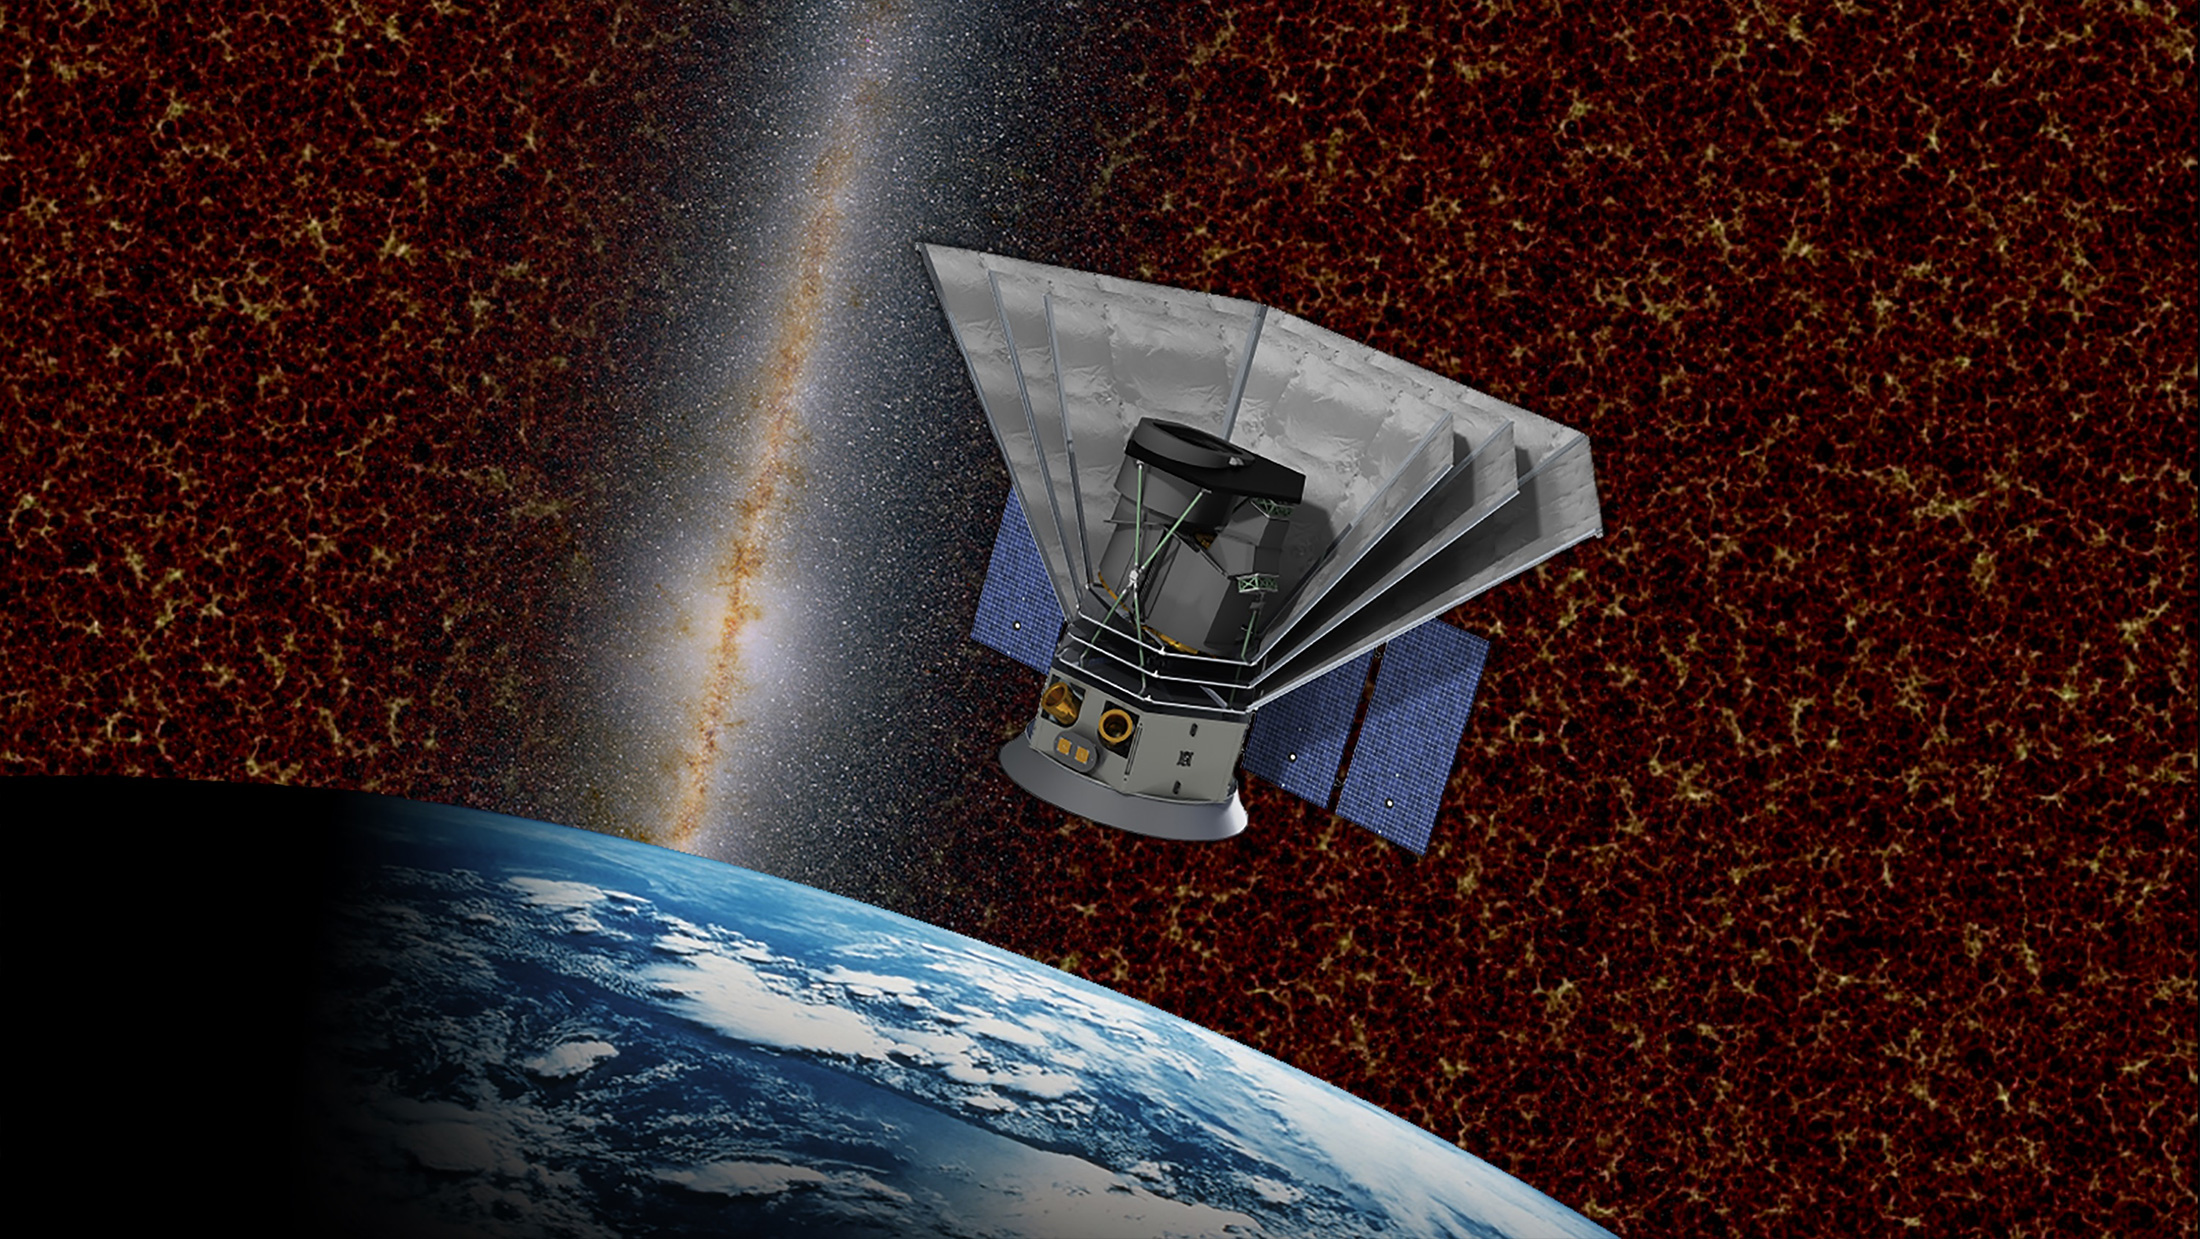 Vue d'artiste du satellite SPHEREx de la Nasa qui sera lancé en 2023. Son objectif est d'explorer les origines de l'univers et de la vie. © Nasa, Caltech